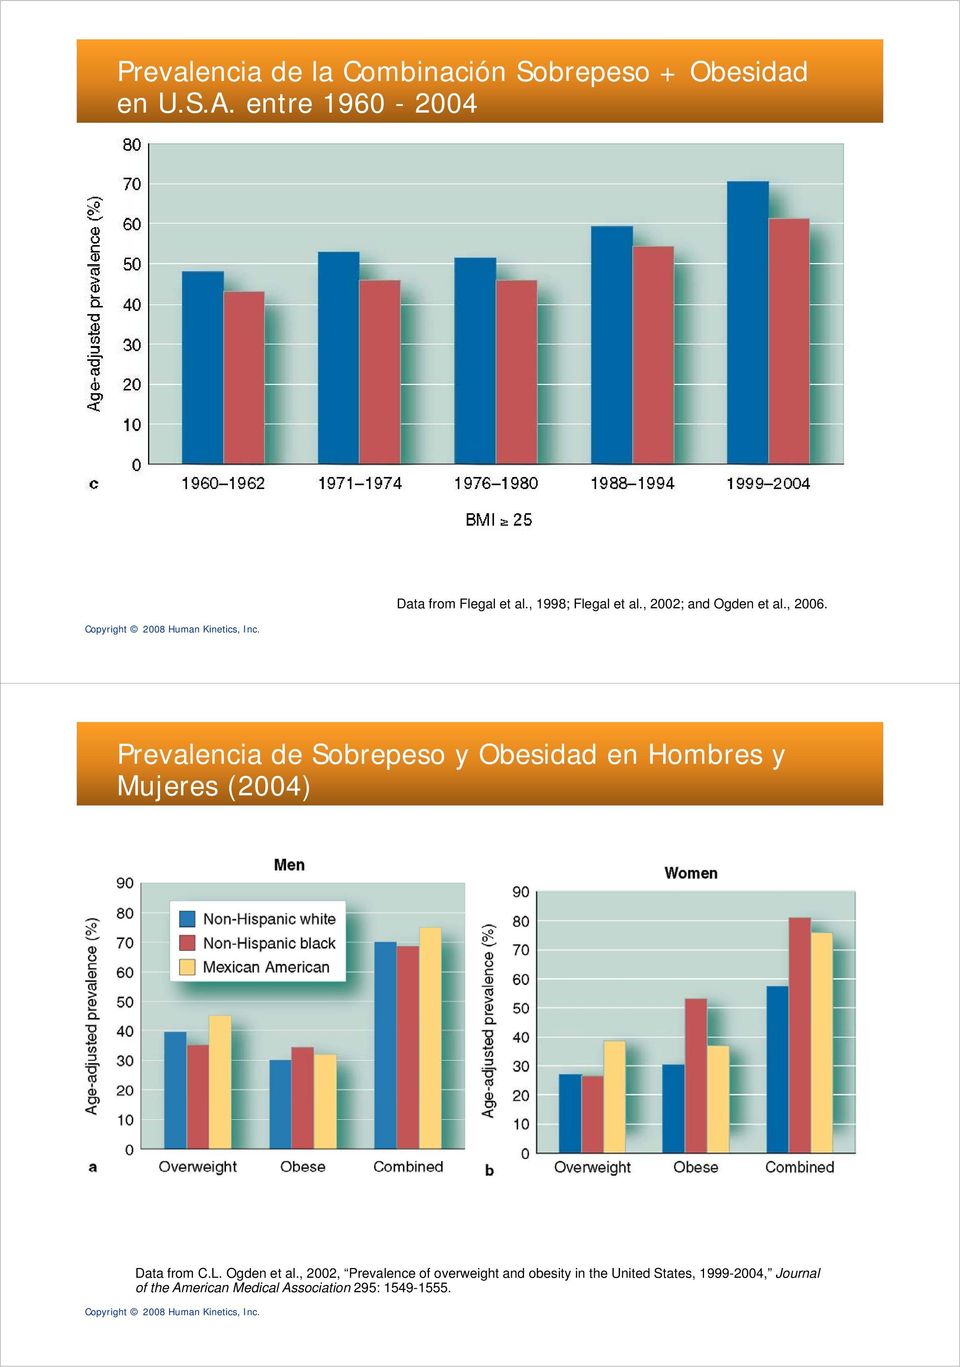 Prevalencia de Sobrepeso y Obesidad en Hombres y Mujeres (2004) Data from C.L. Ogden et al.